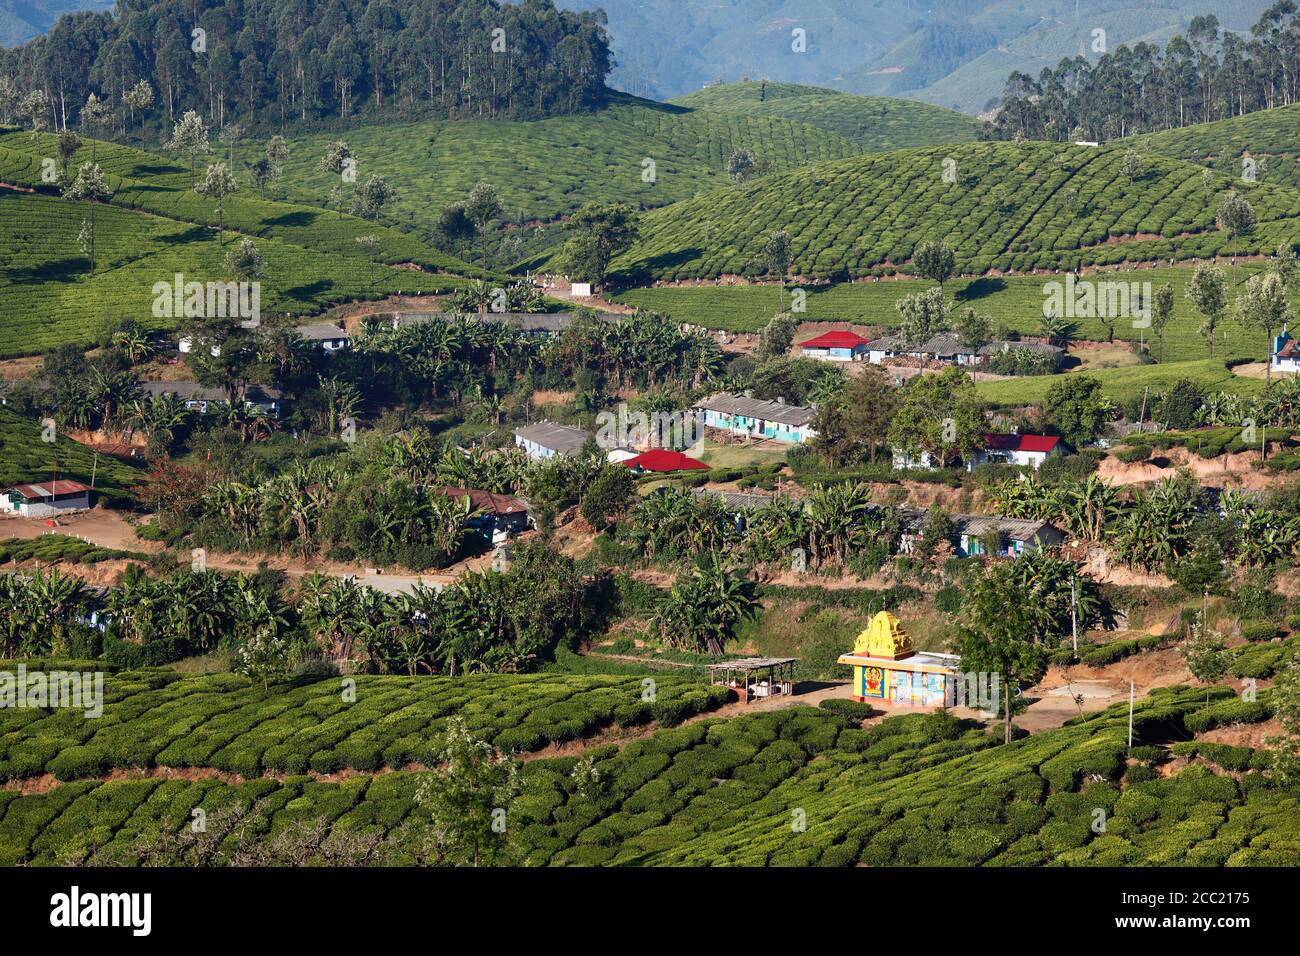 India, South India, Kerala, Munnar, View of tea plantations Stock Photo